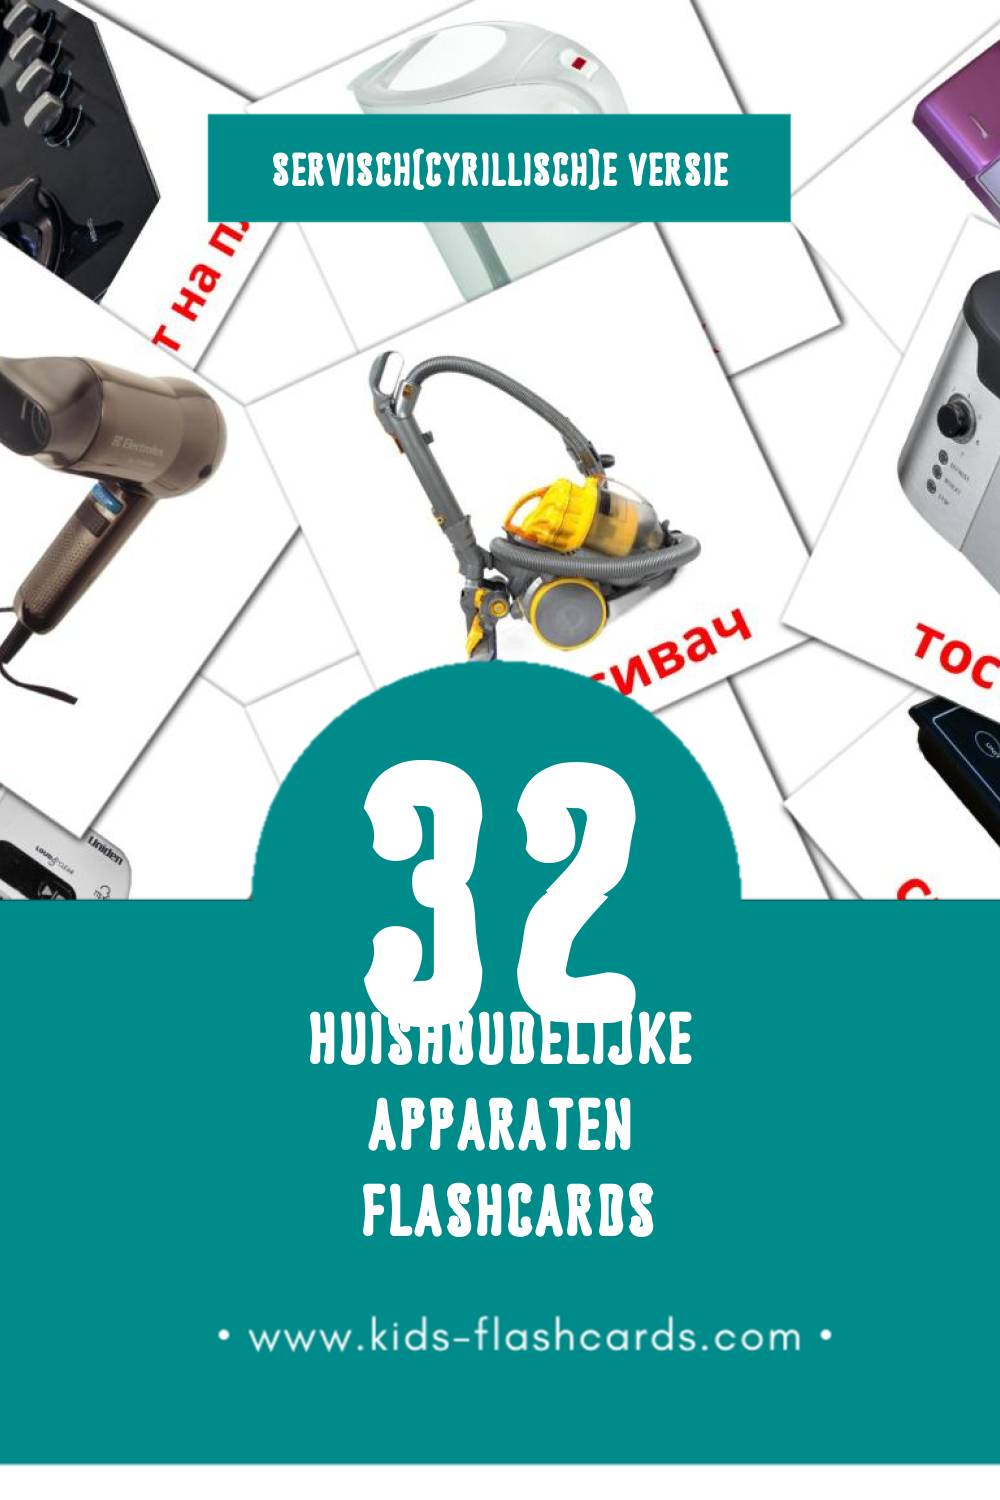 Visuele апарати за домаћинство Flashcards voor Kleuters (32 kaarten in het Servisch(cyrillisch))